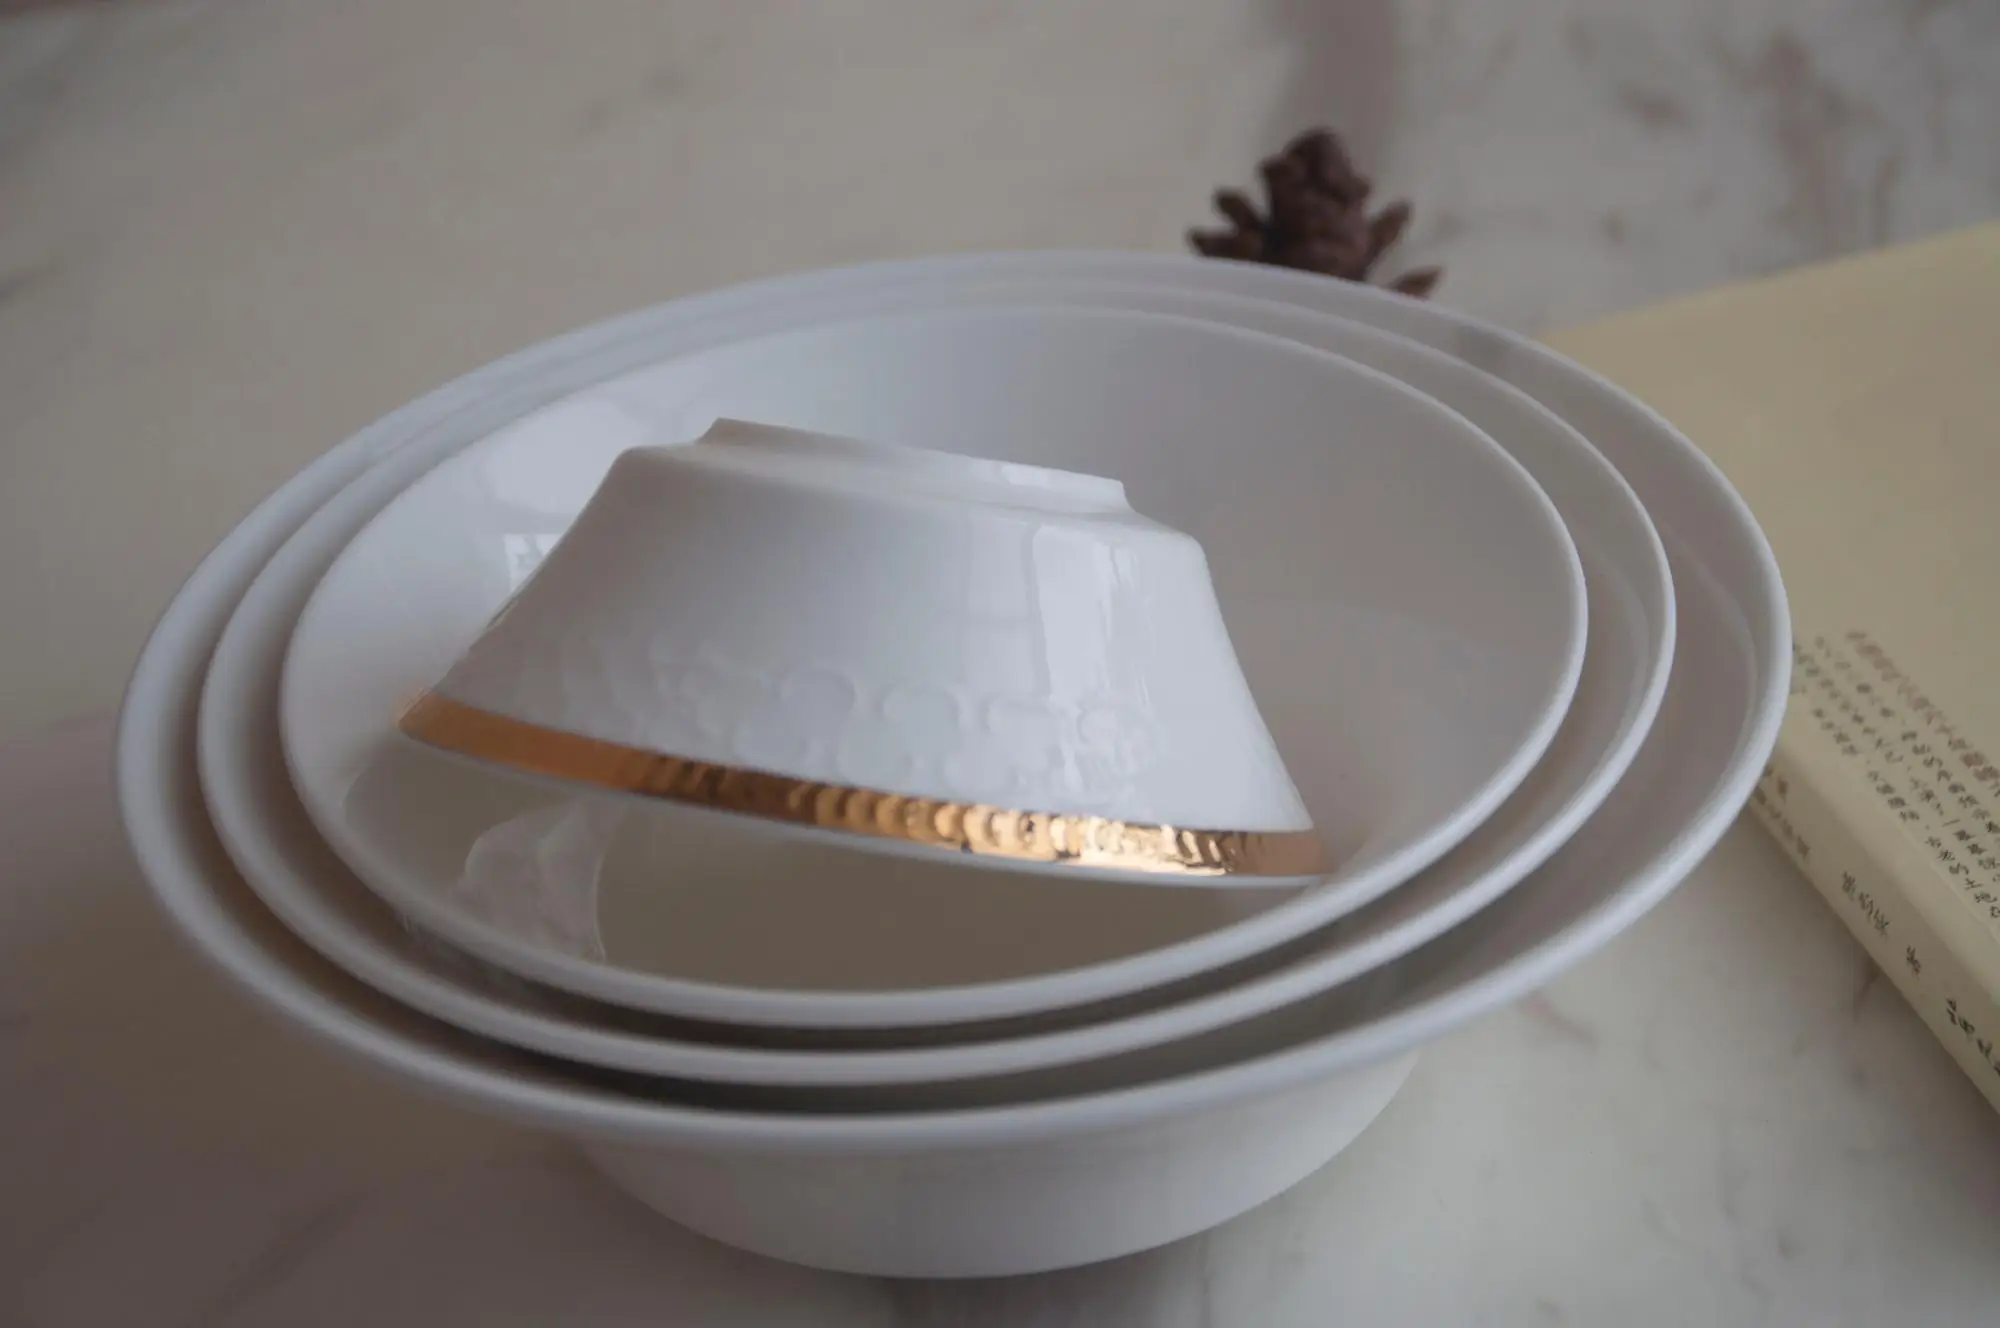 Gold Rim Dinner Plates Latest Design New Bone China Dinner Set For Wedding